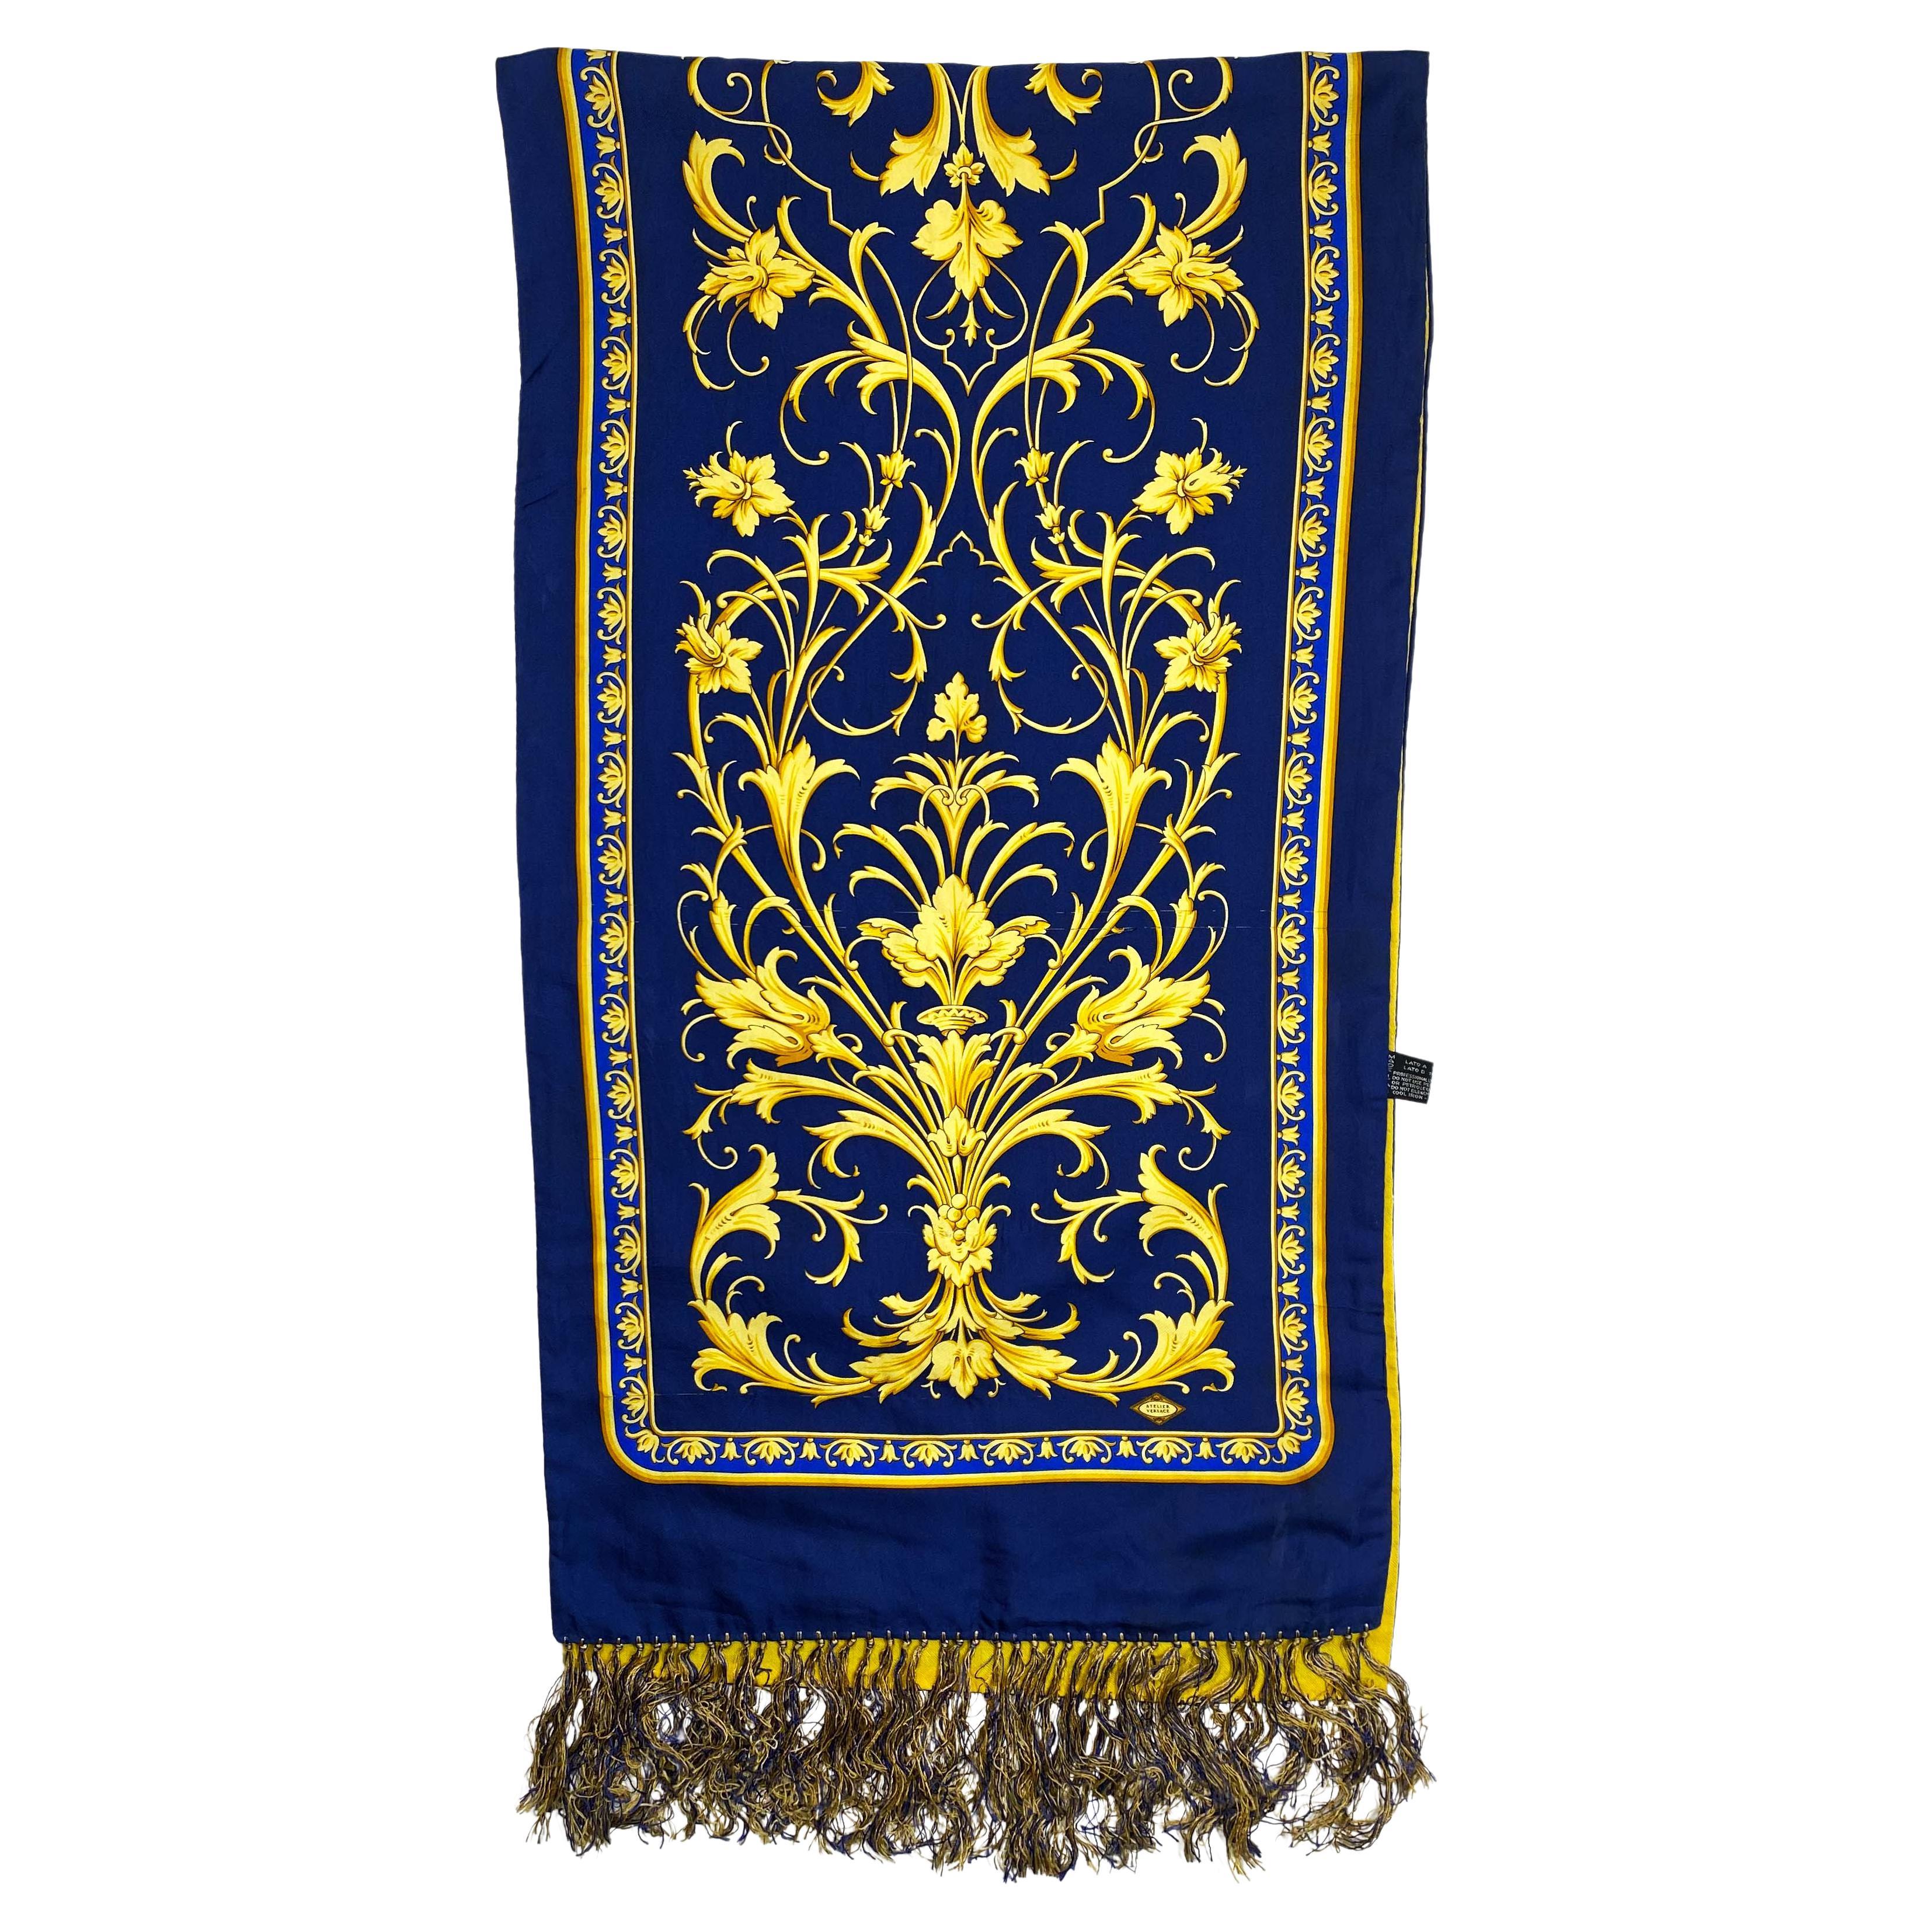 TheRealList présente : un superbe foulard en soie Atelier Versace, conçu par Gianni Versace. Ce magnifique foulard a une base bleu profond avec un motif baroque, le dos est d'un jaune vif. 

Suivez-nous sur Instagram ! @_the_reallist_ 